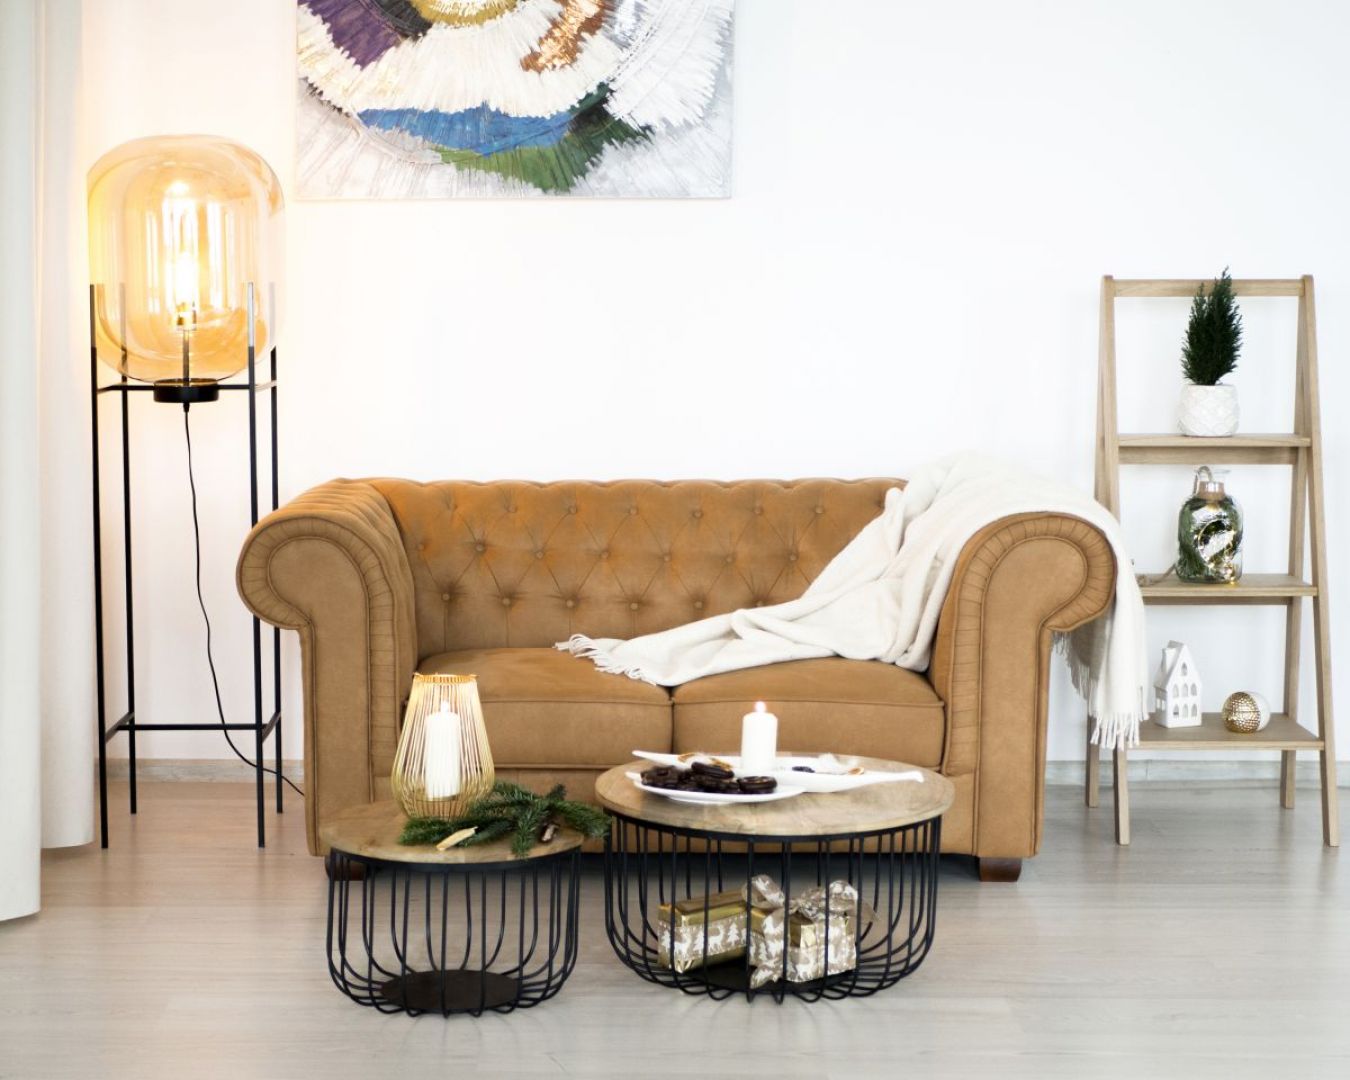 Sofa typu chesterfield zestawiona z kawowymi stolikami z drewna dobrze sprawdzi się w typowo domowym salonie. Fot. Make Home